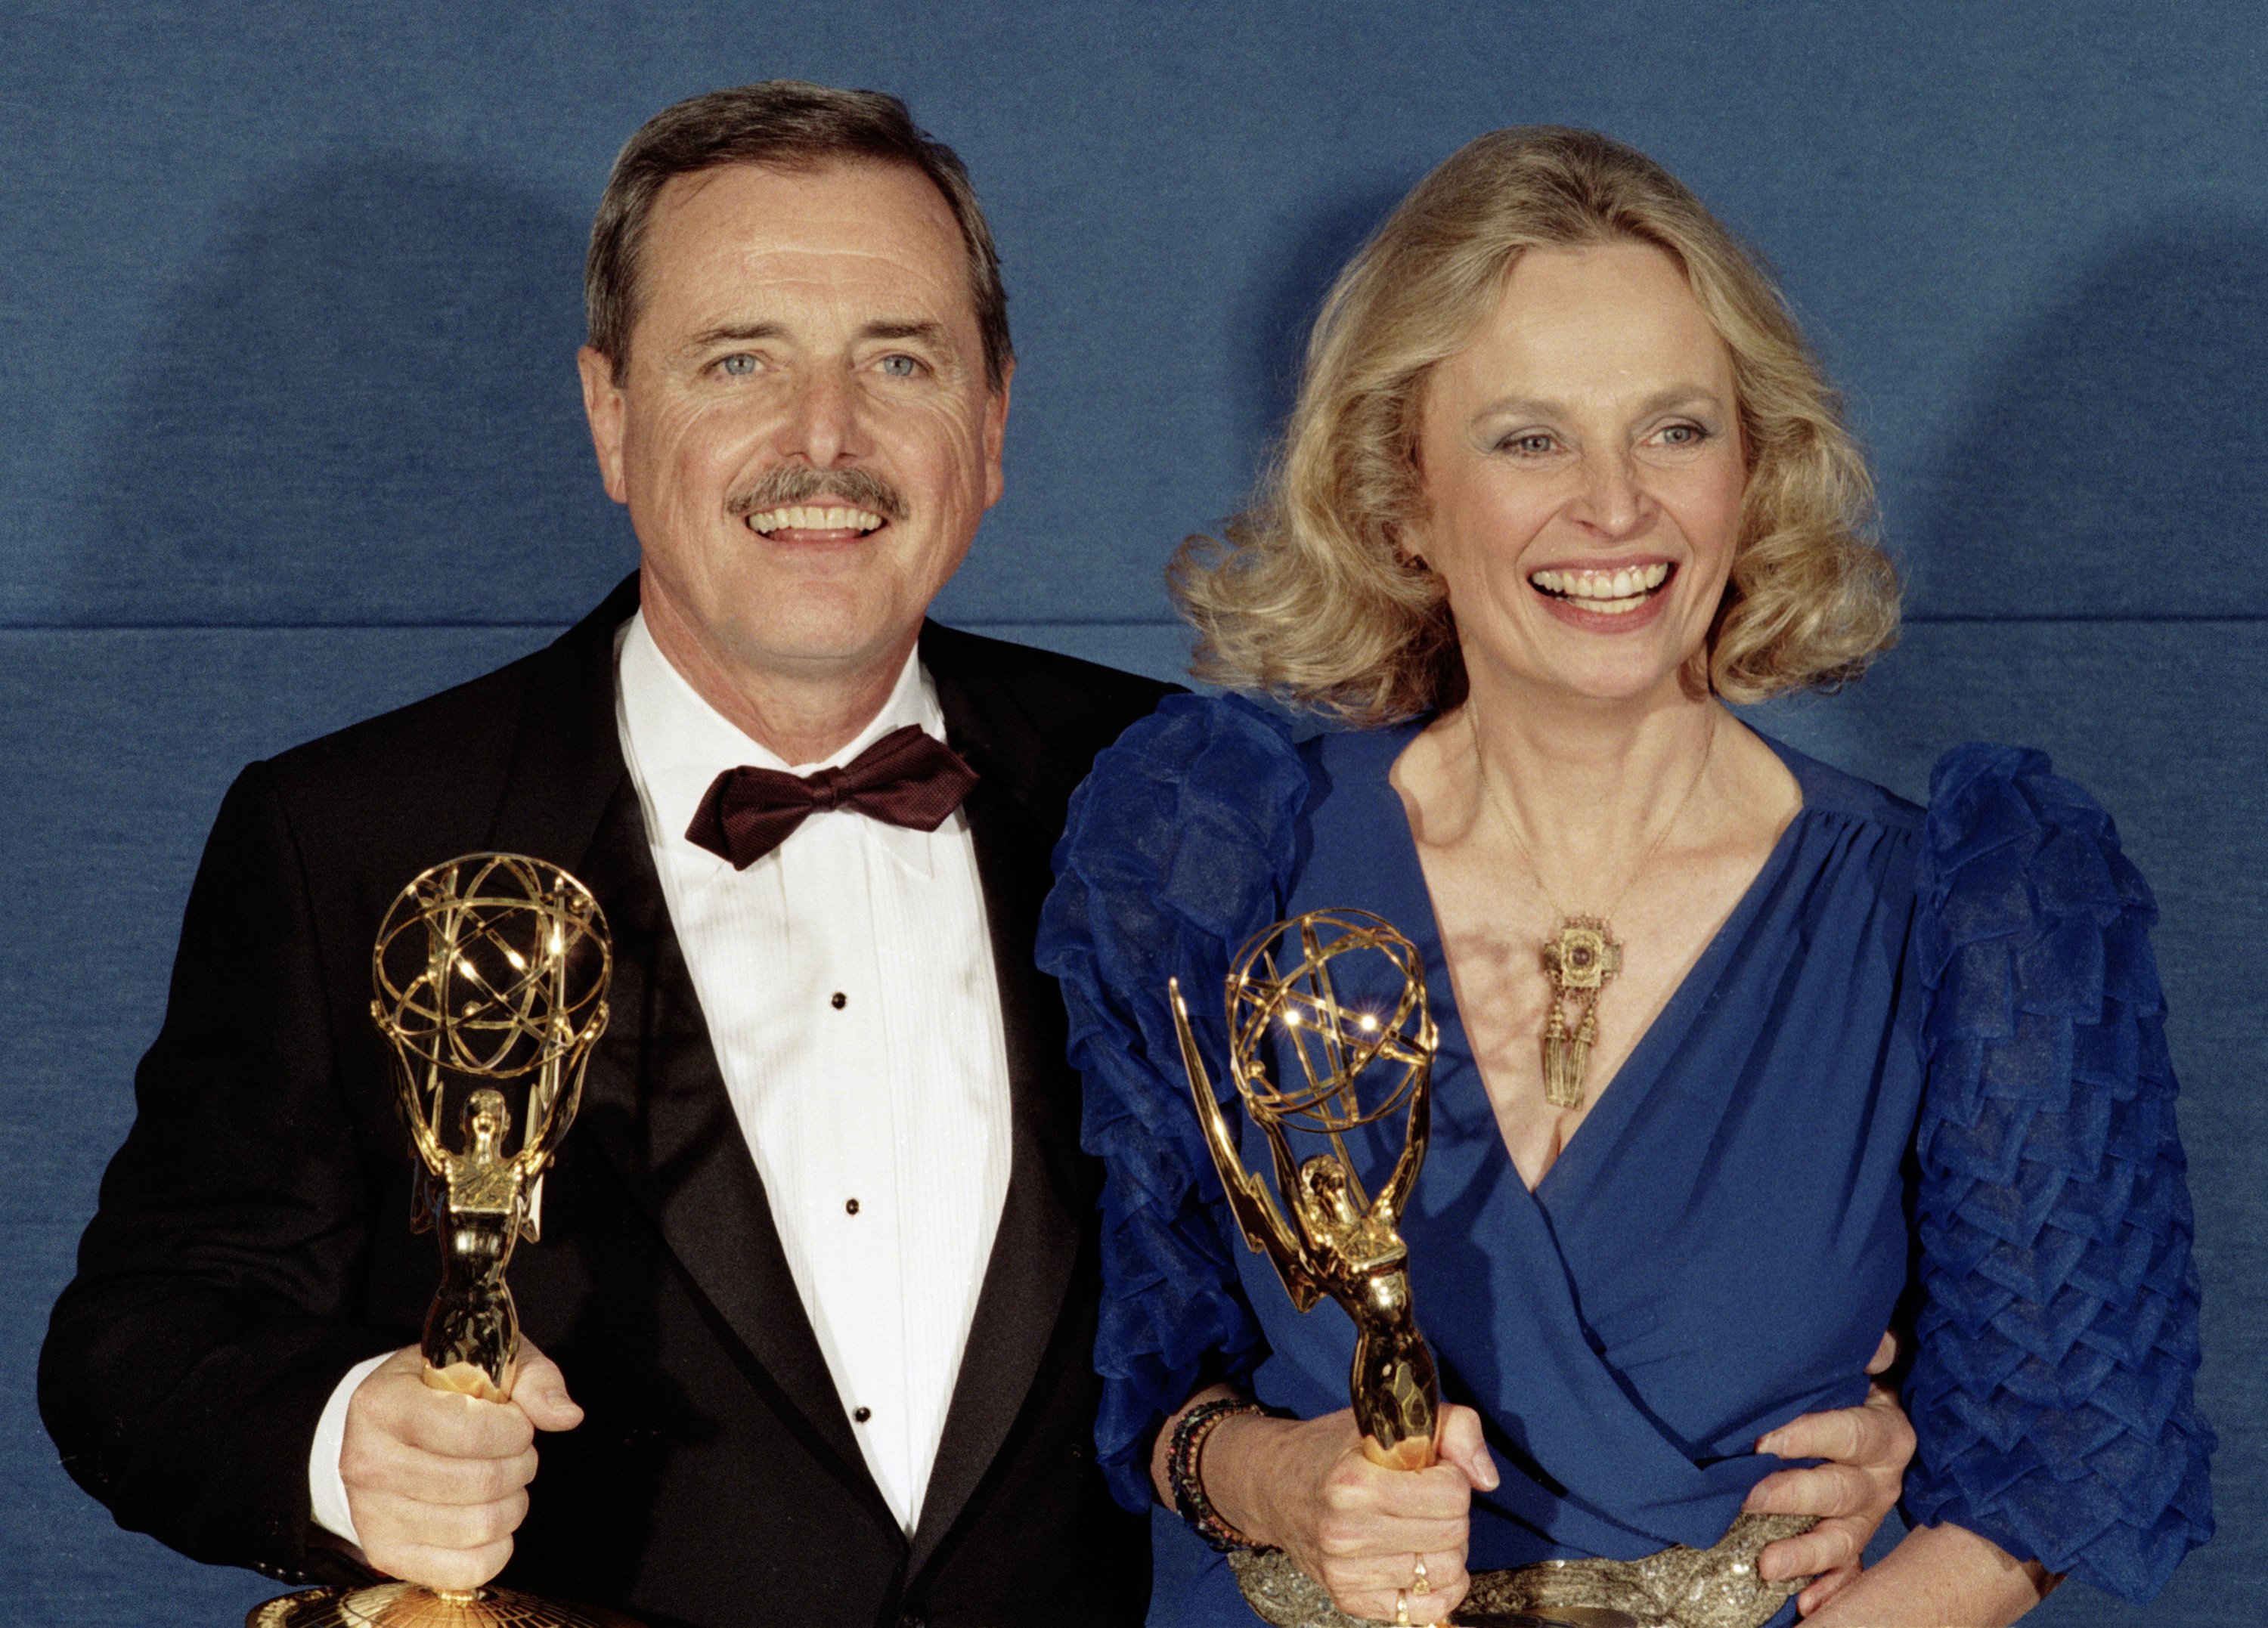 William Daniels et Bonnie Bartlett, lauréats des Emmy Awards et mari et femme dans la vraie vie, célèbrent leurs Emmy Awards dans les coulisses des Emmy Awards, le 21 septembre 1986 à Pasadena, en Californie. | Source : Getty Images